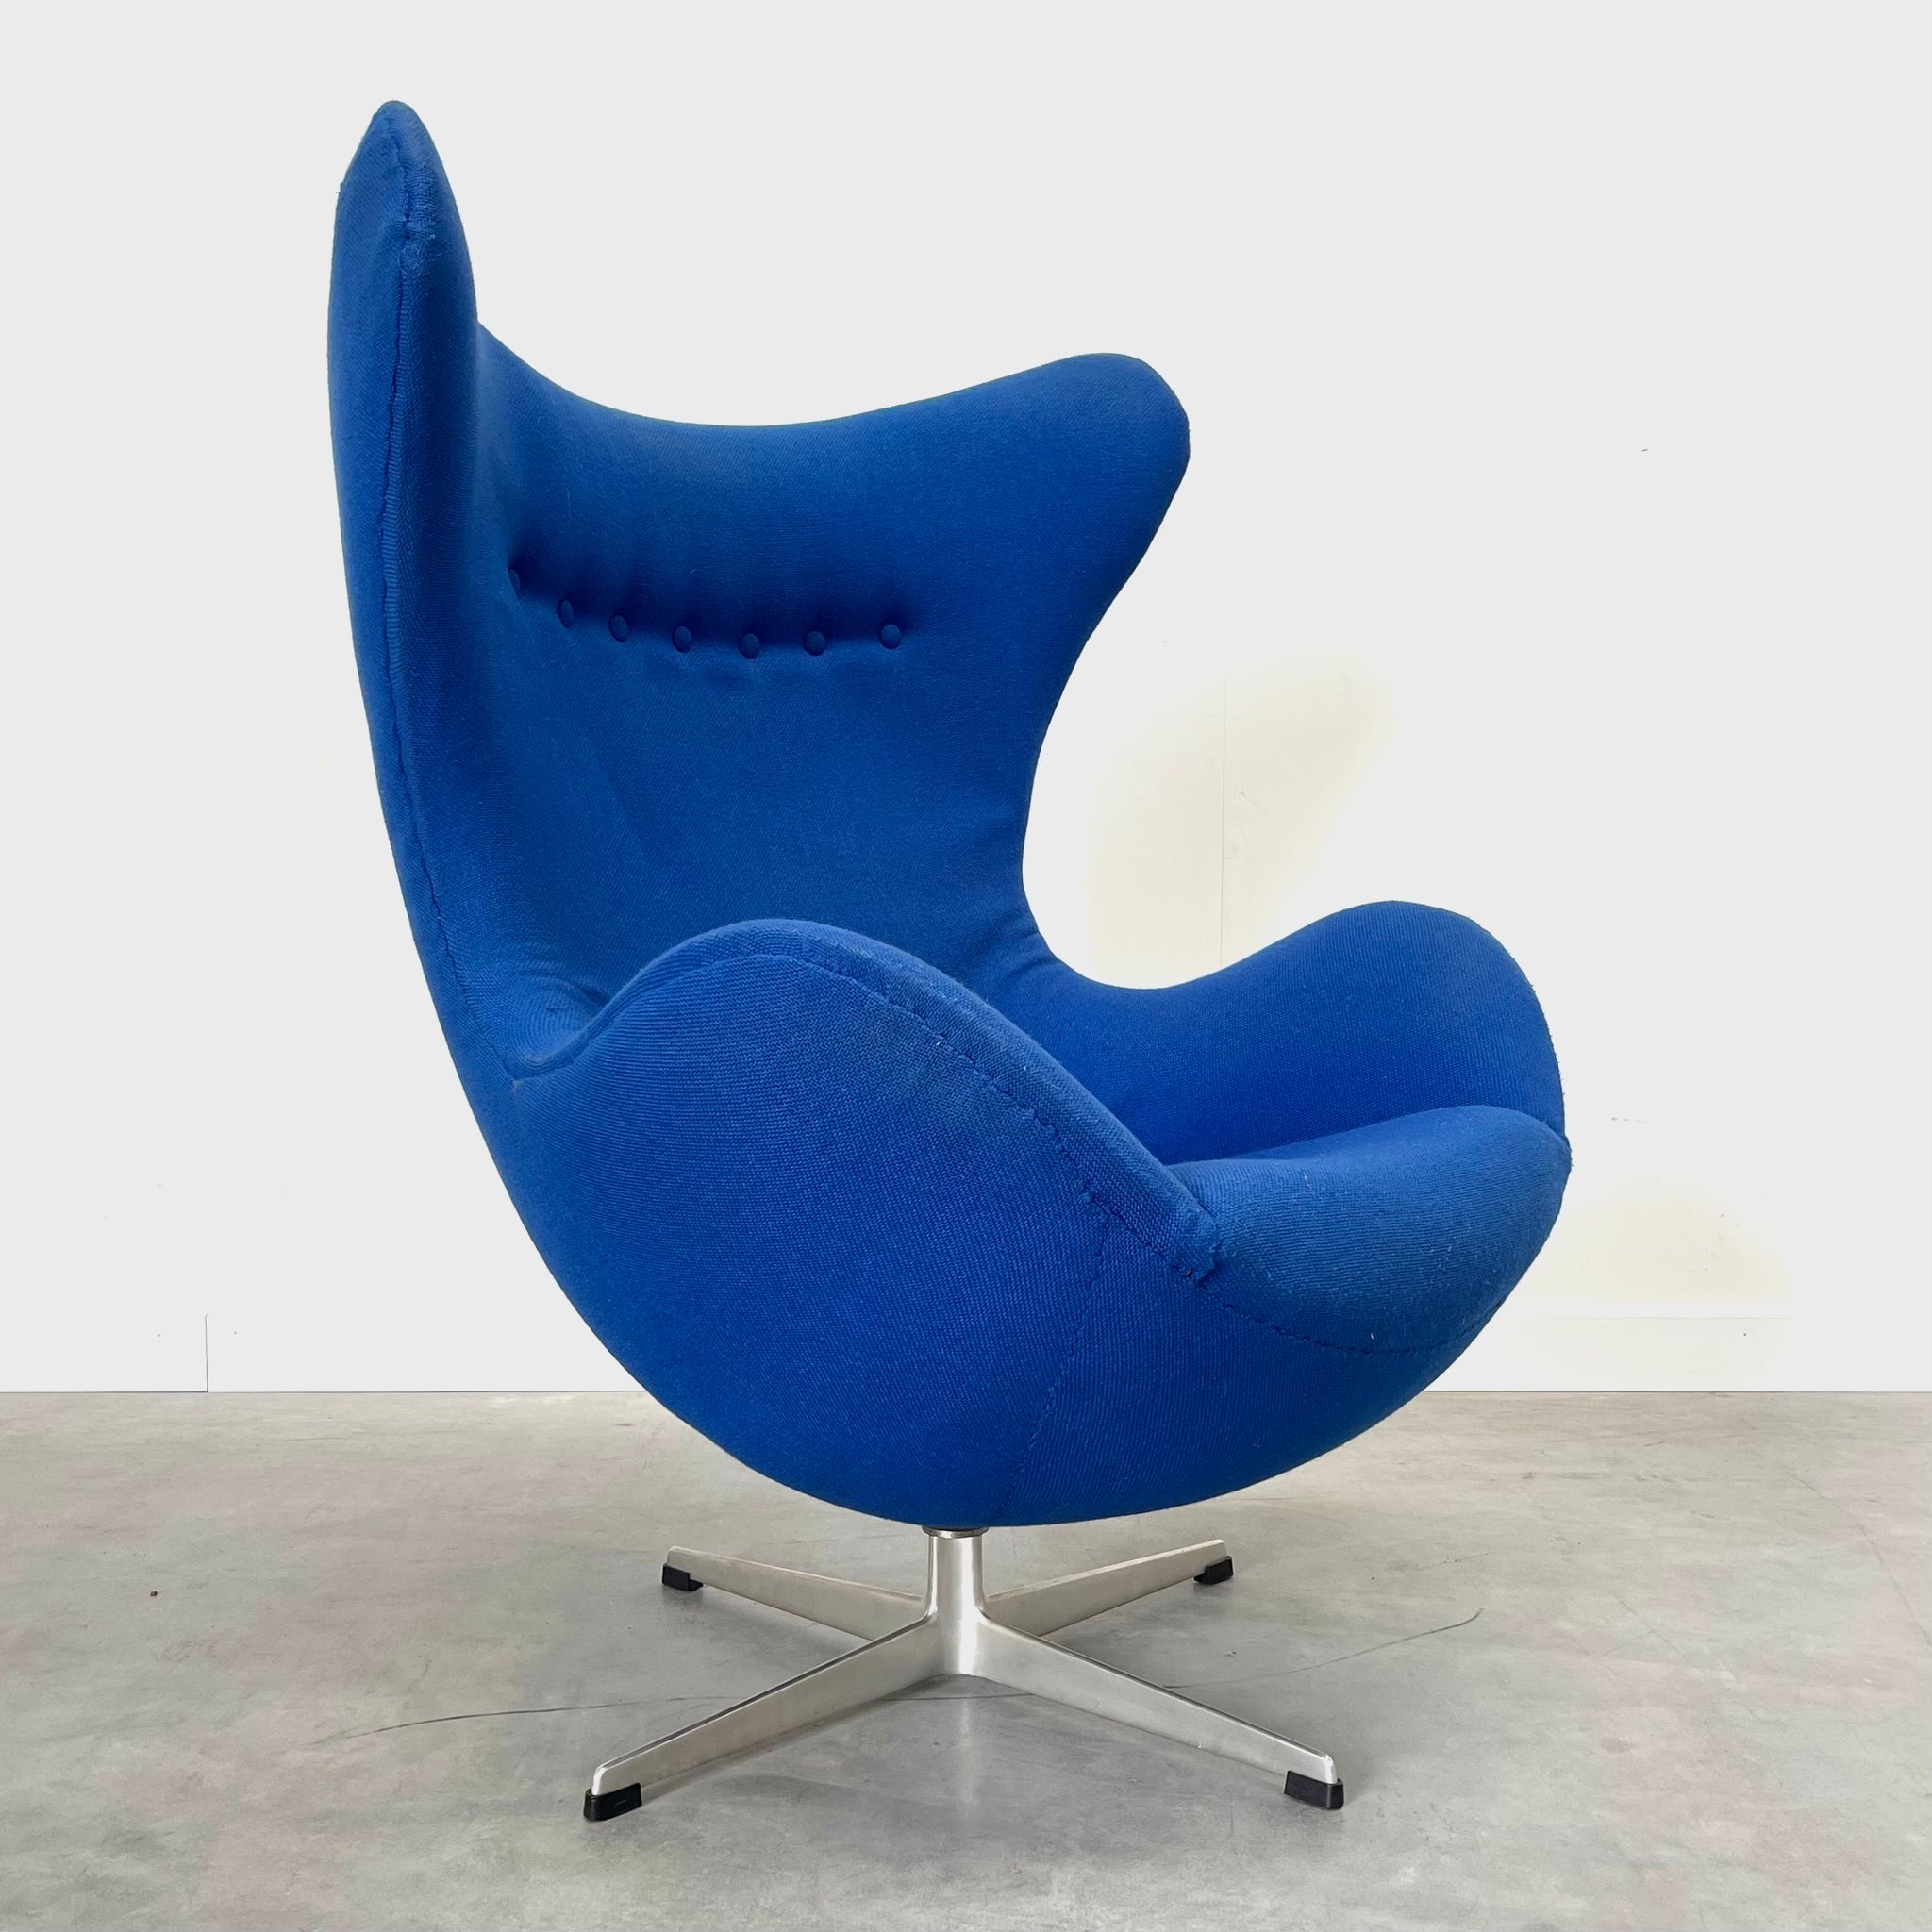 Egg chair by Arne Jacobsen, Denmark 1960s